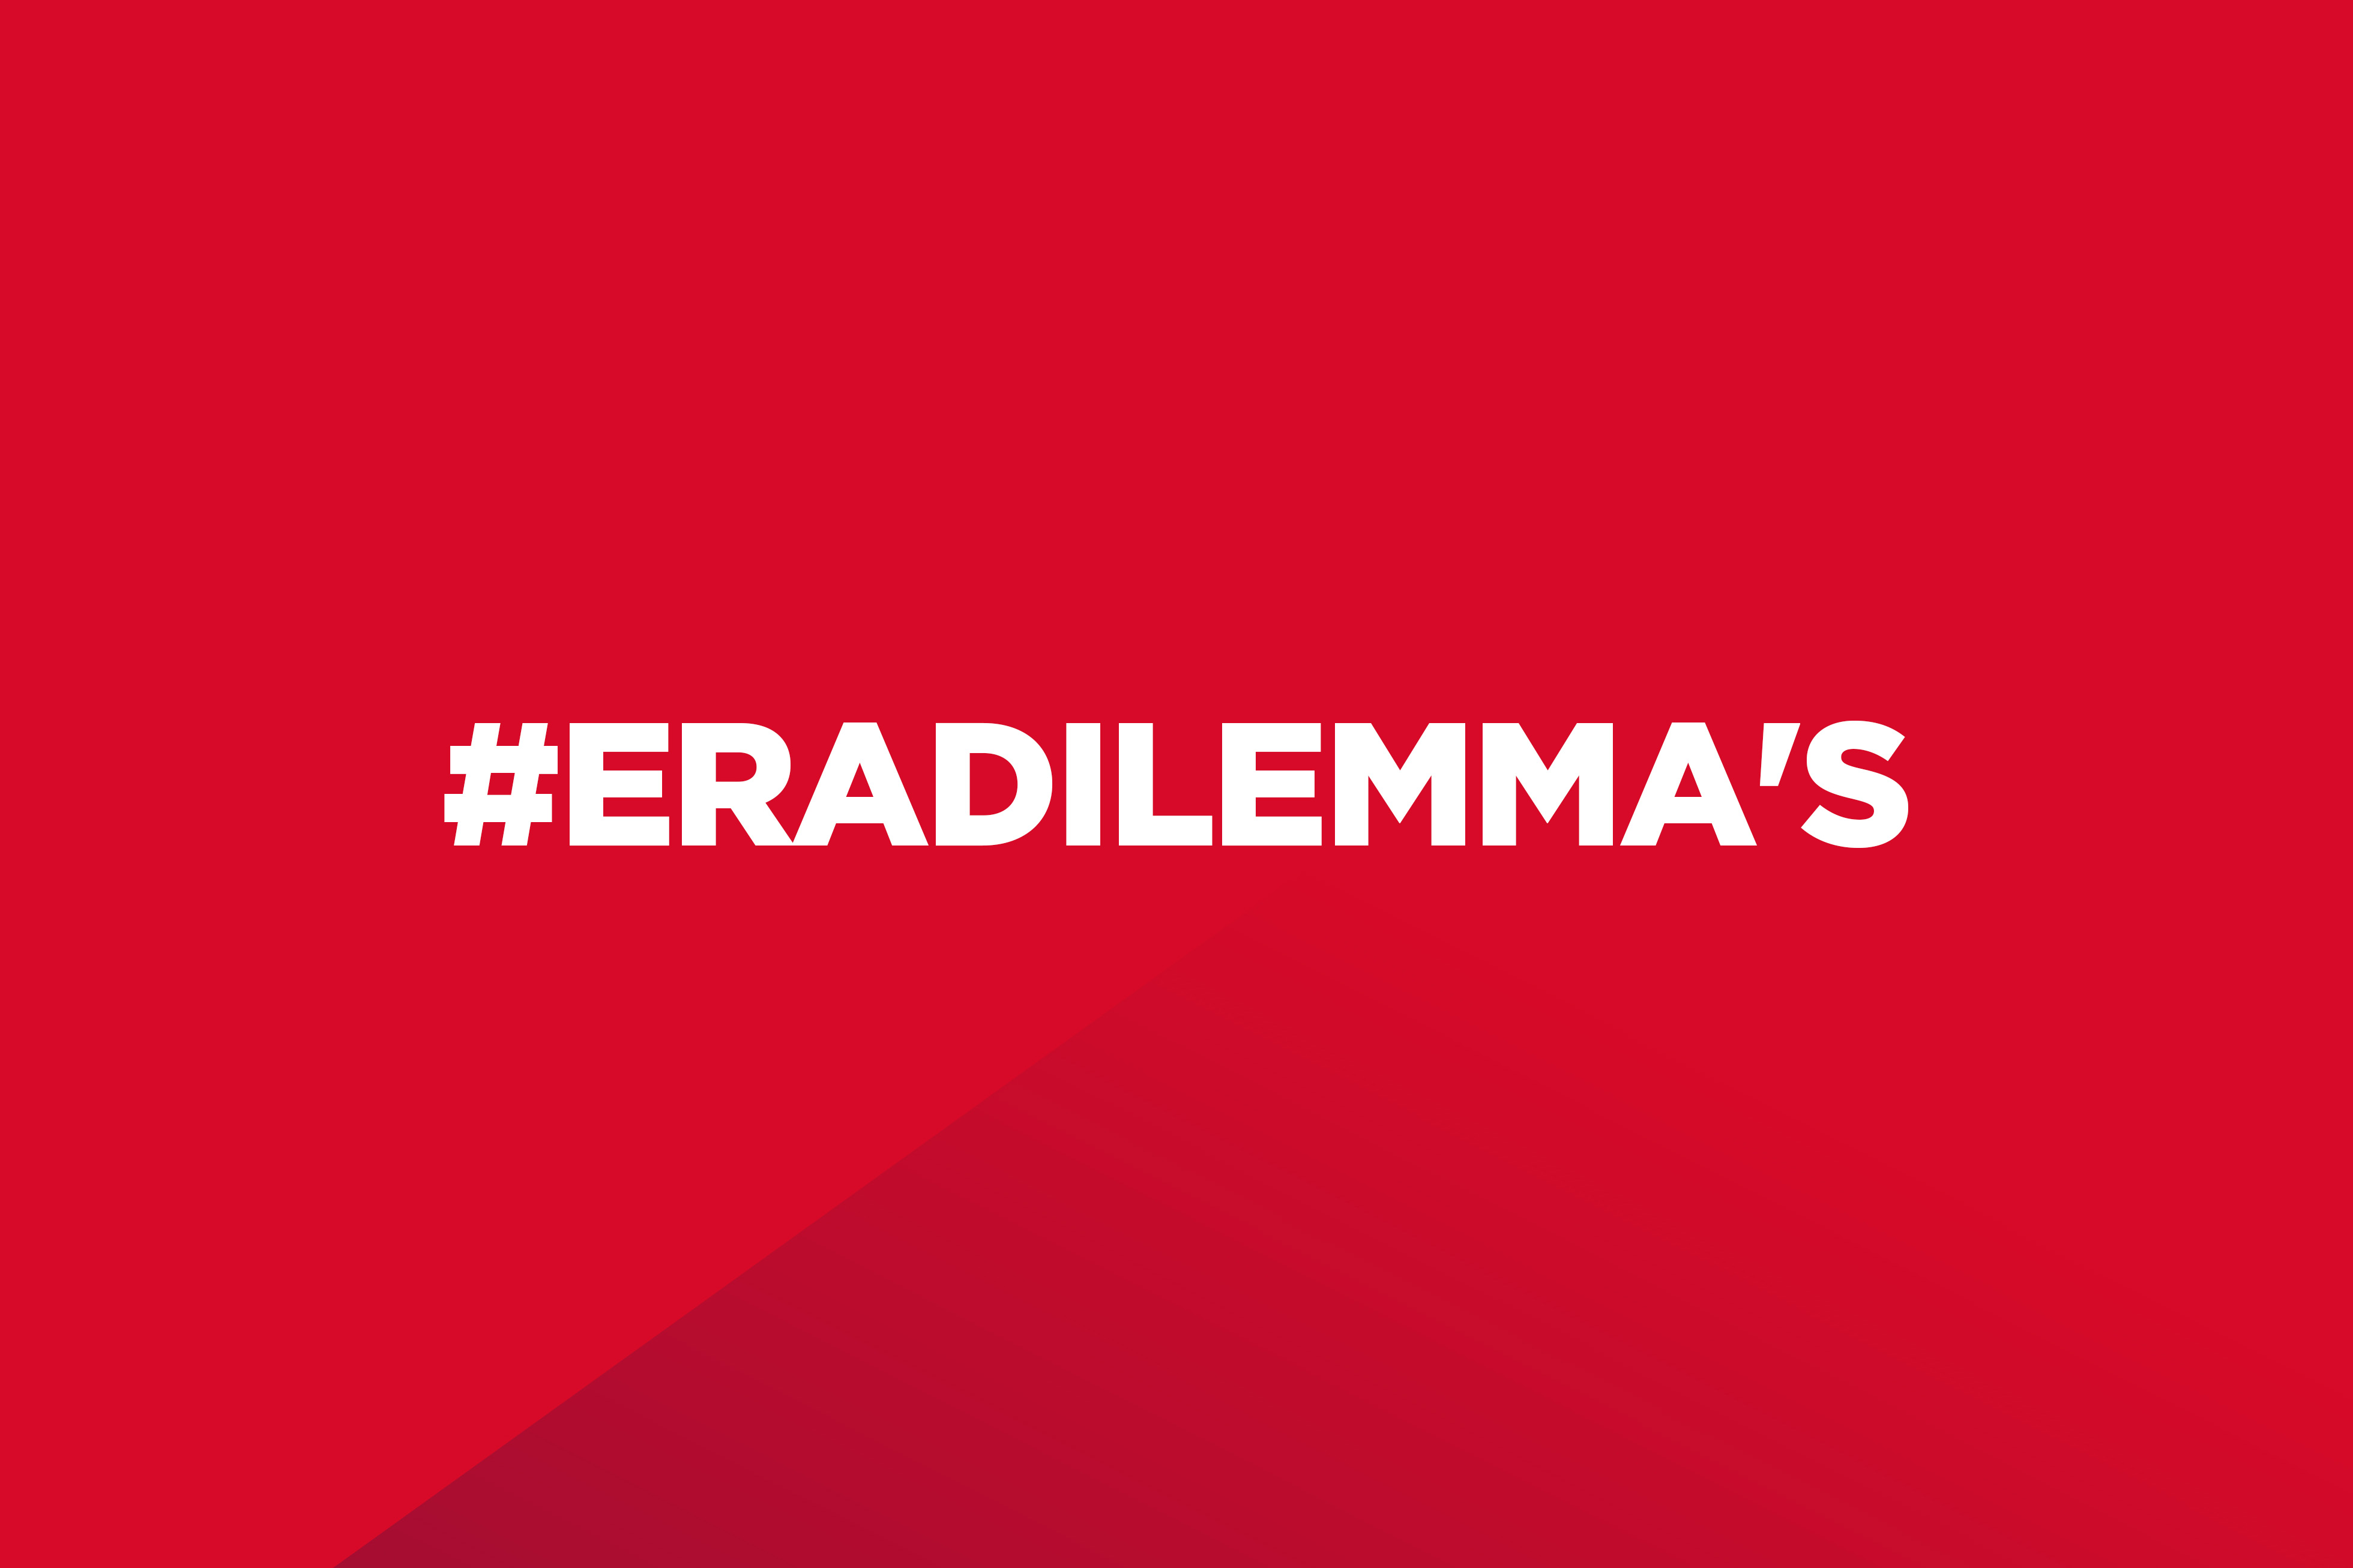 Dit is een rood kleurvlak met de tekst "#ERADILEMMA'S" op.